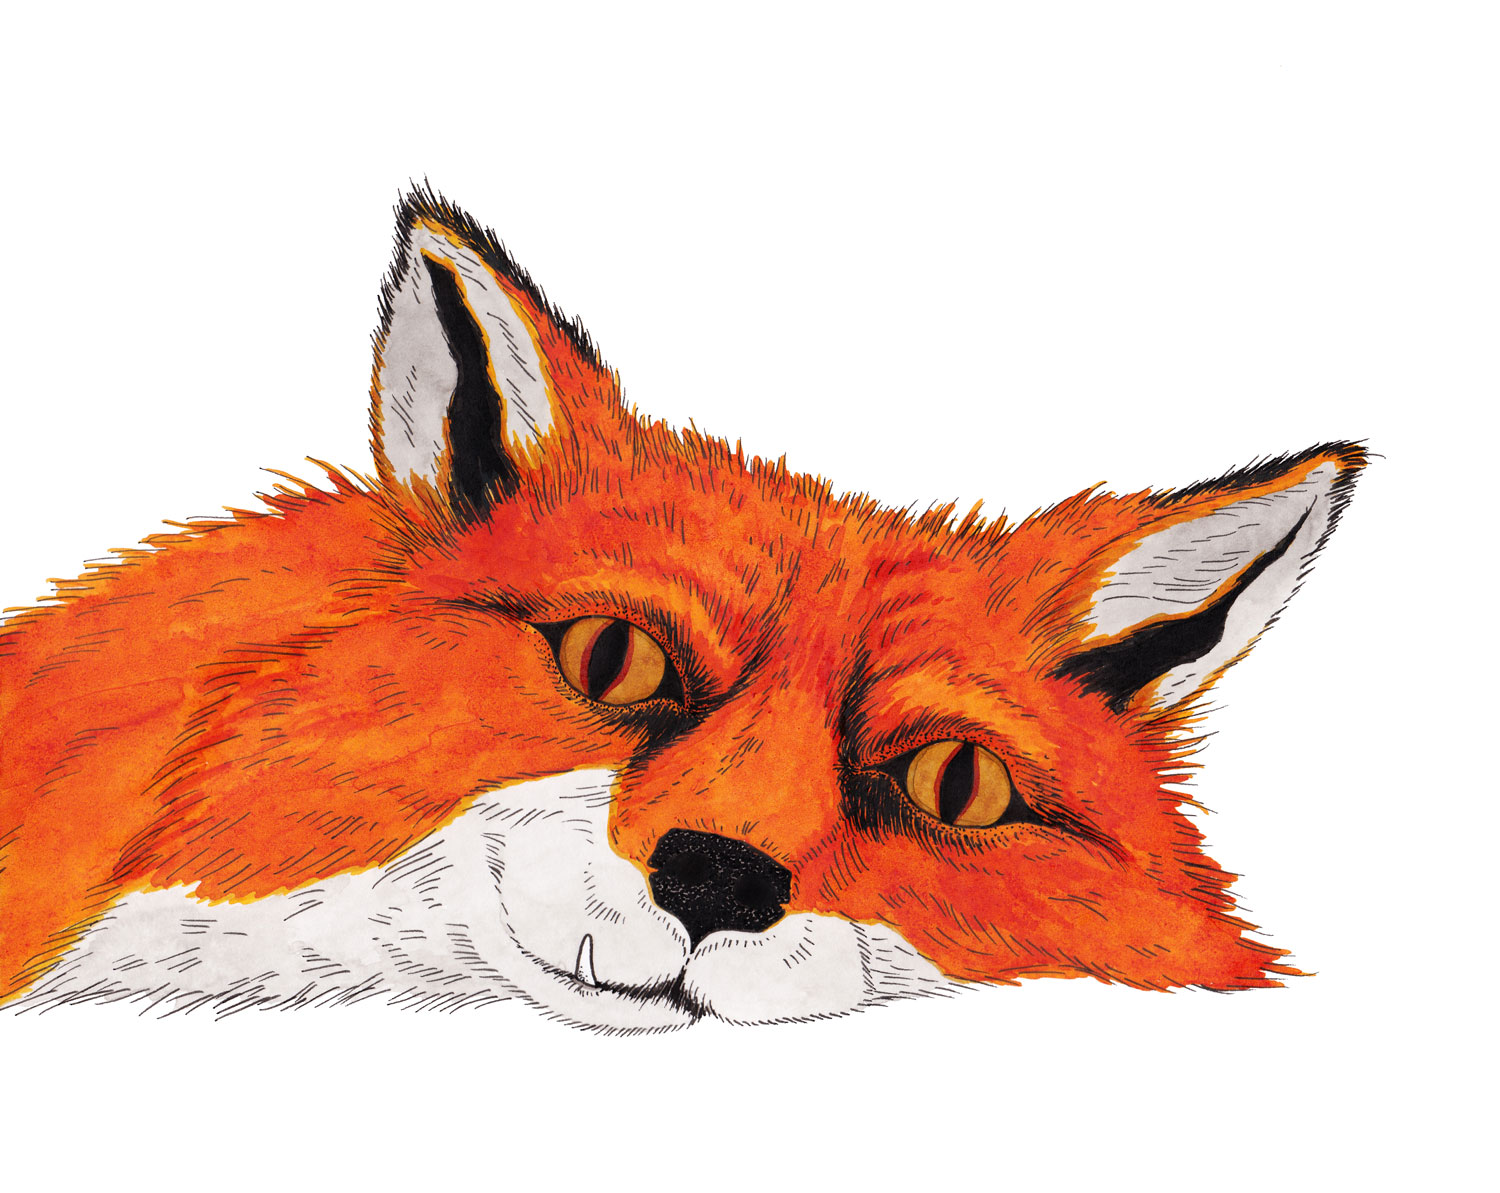 fox-nap-juniper-fang-illustration-matthew-woods.jpg